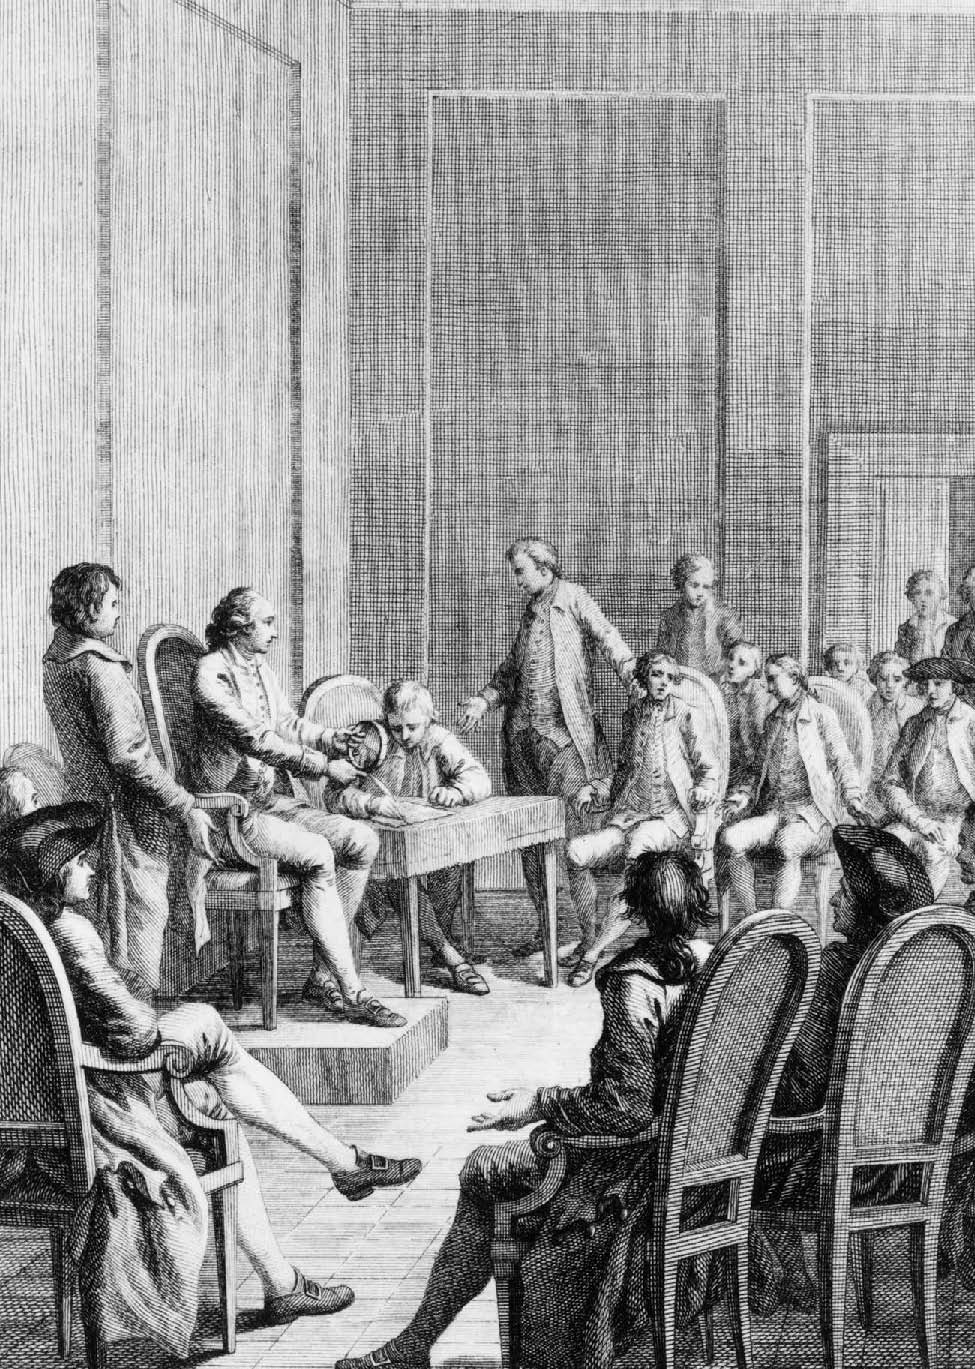 SI QUIERES SABER MÁS El Primer Congreso Continental tuvo lugar en Filadelfia - photo 7